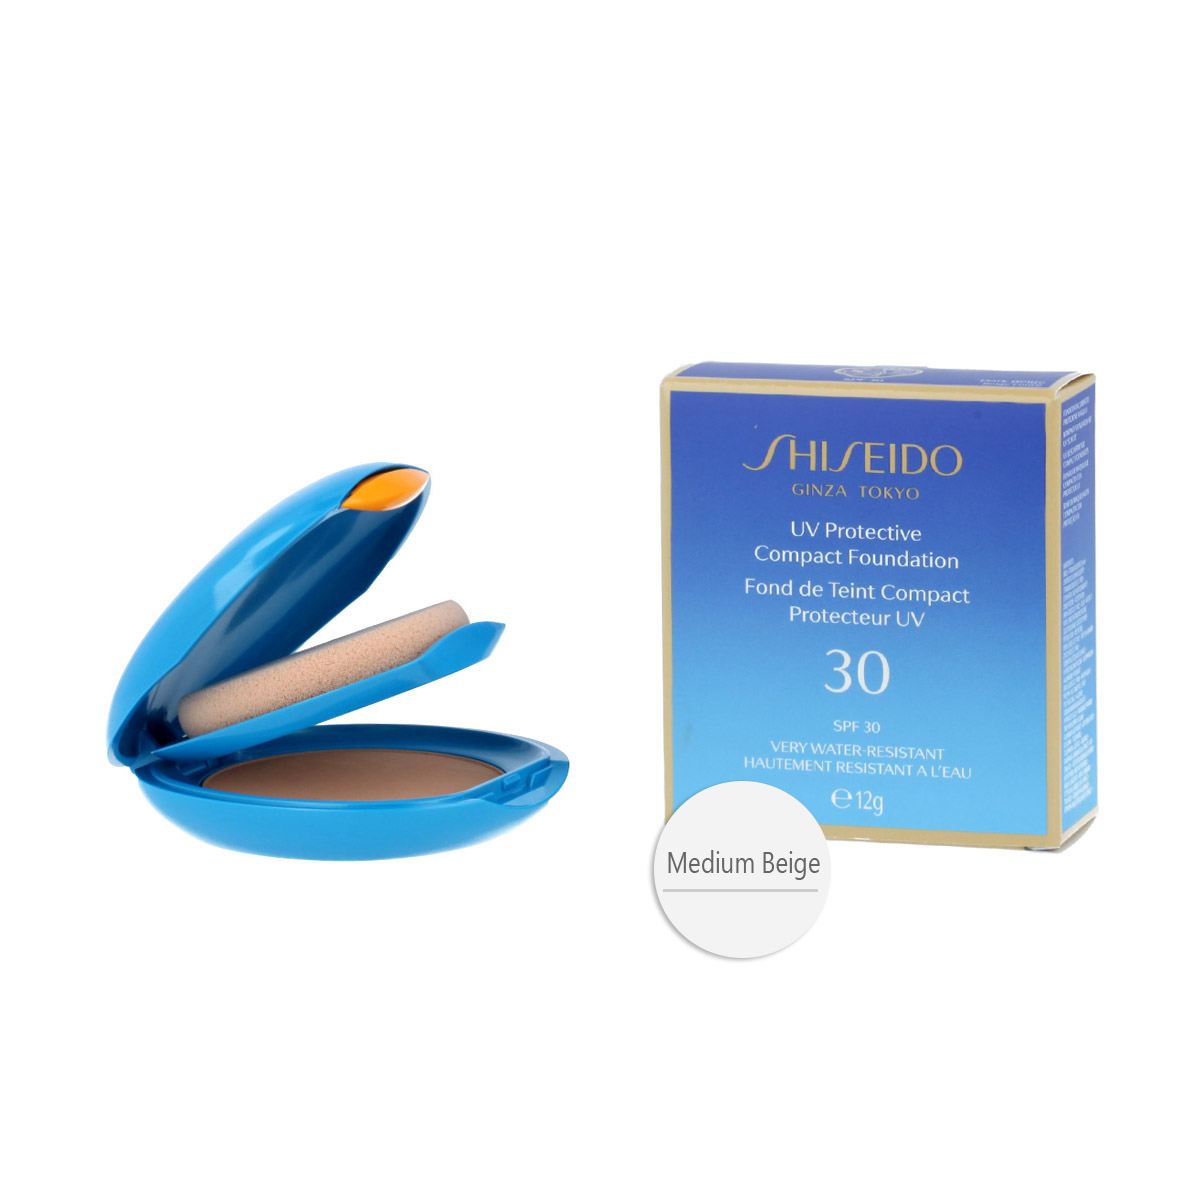 Shiseido UV Protective 12g